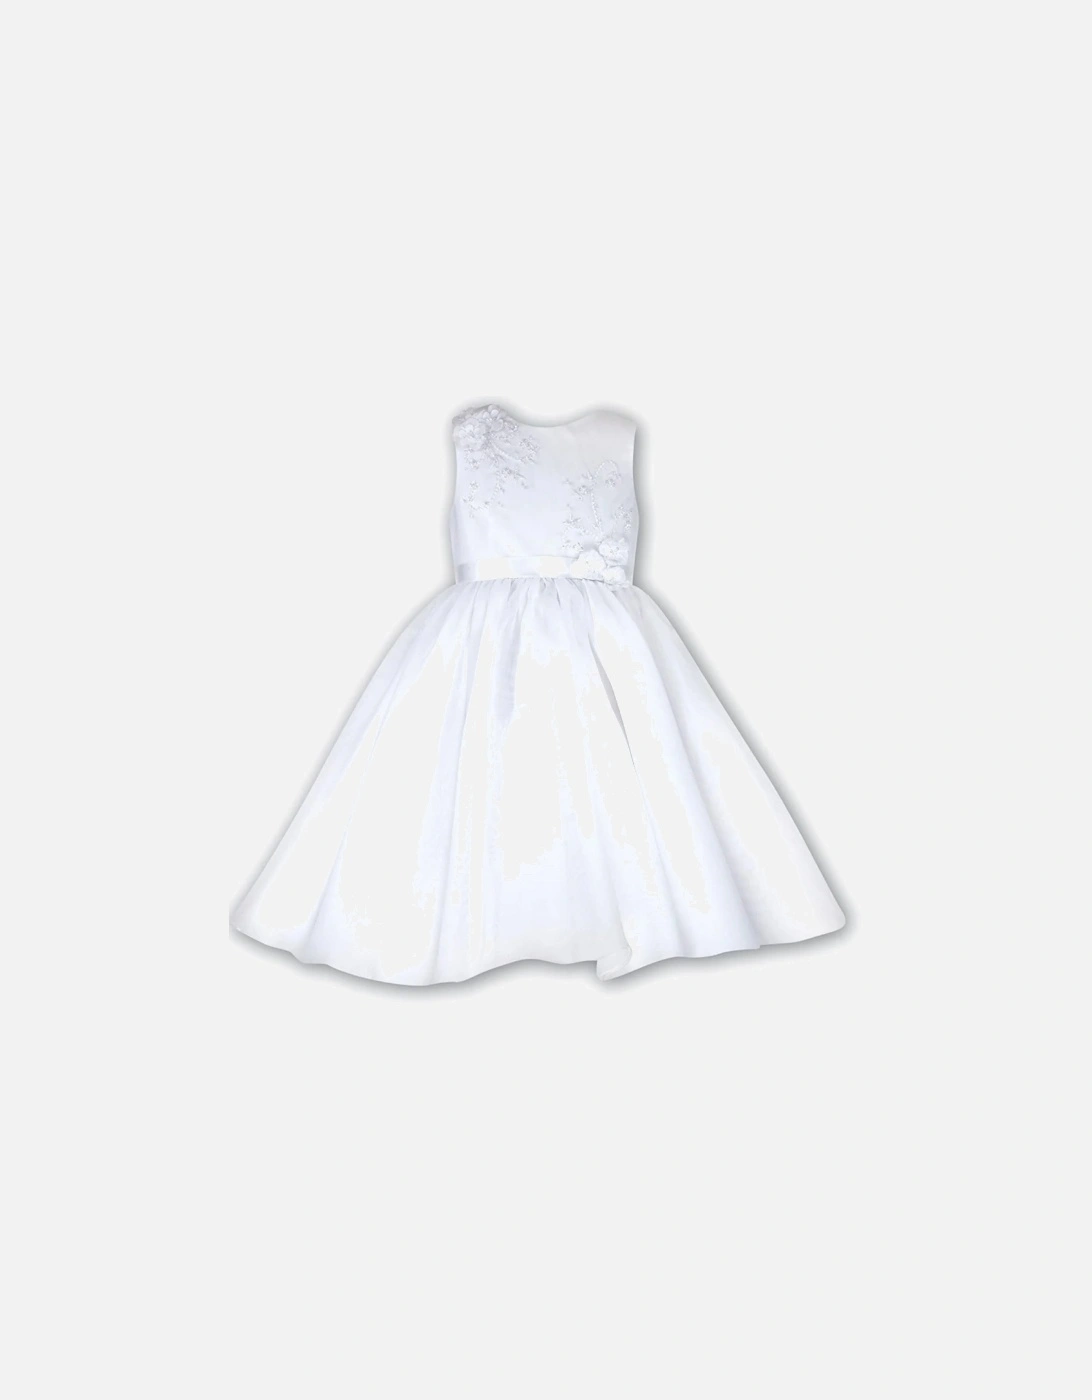 White Ballerina Length Dress, 2 of 1